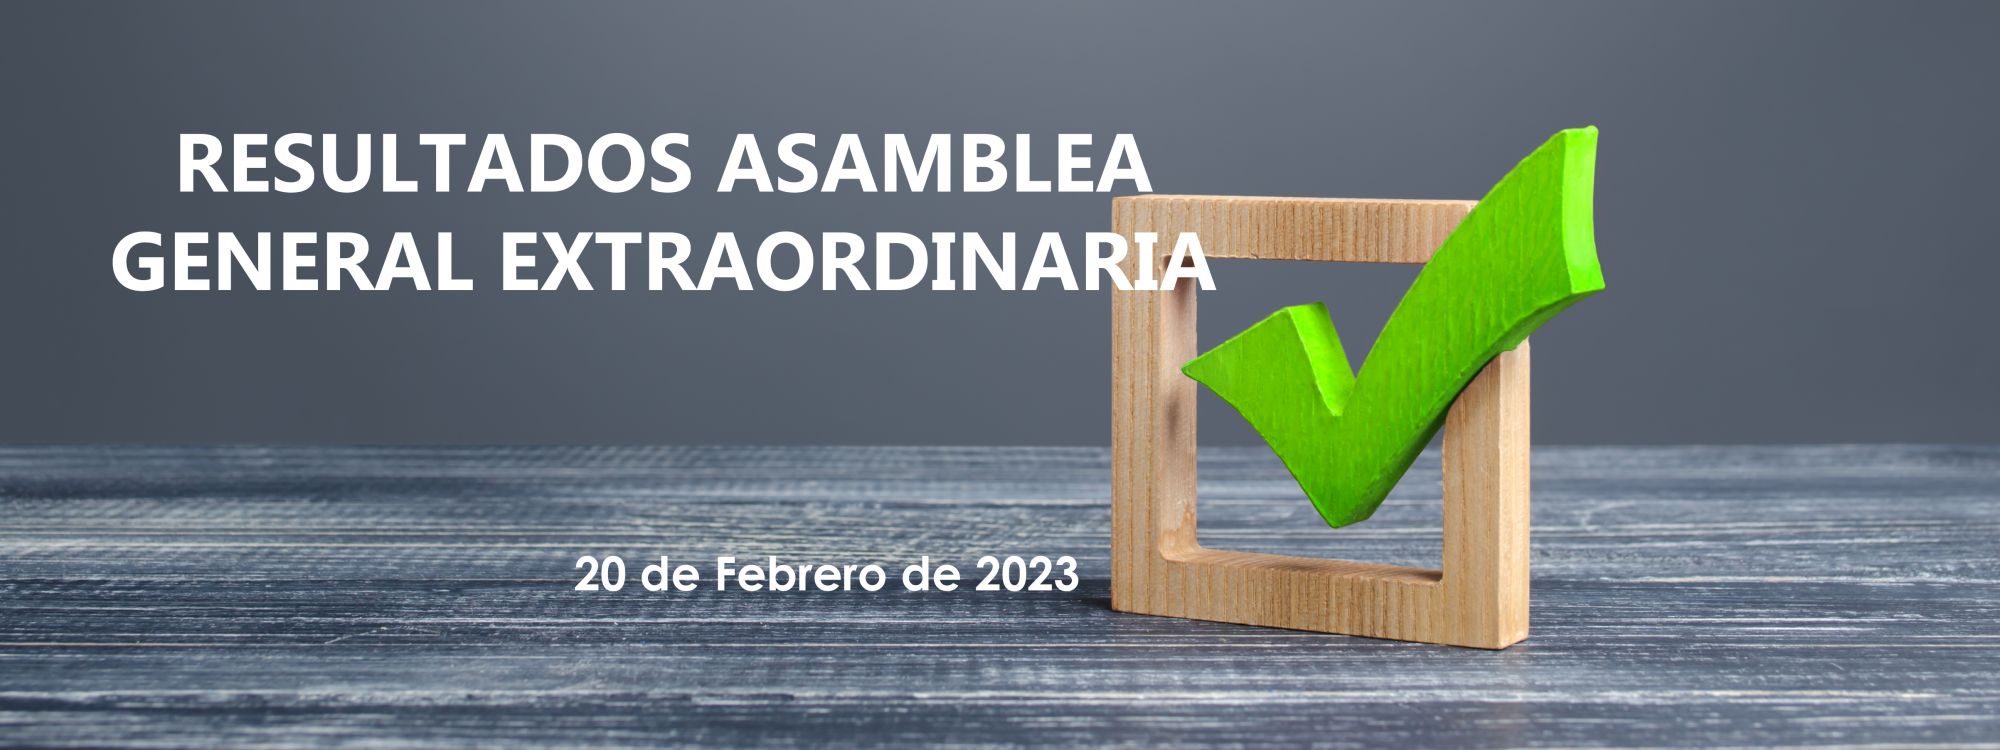 Resultados Asamblea Extraordinaria 20 febrero 2023